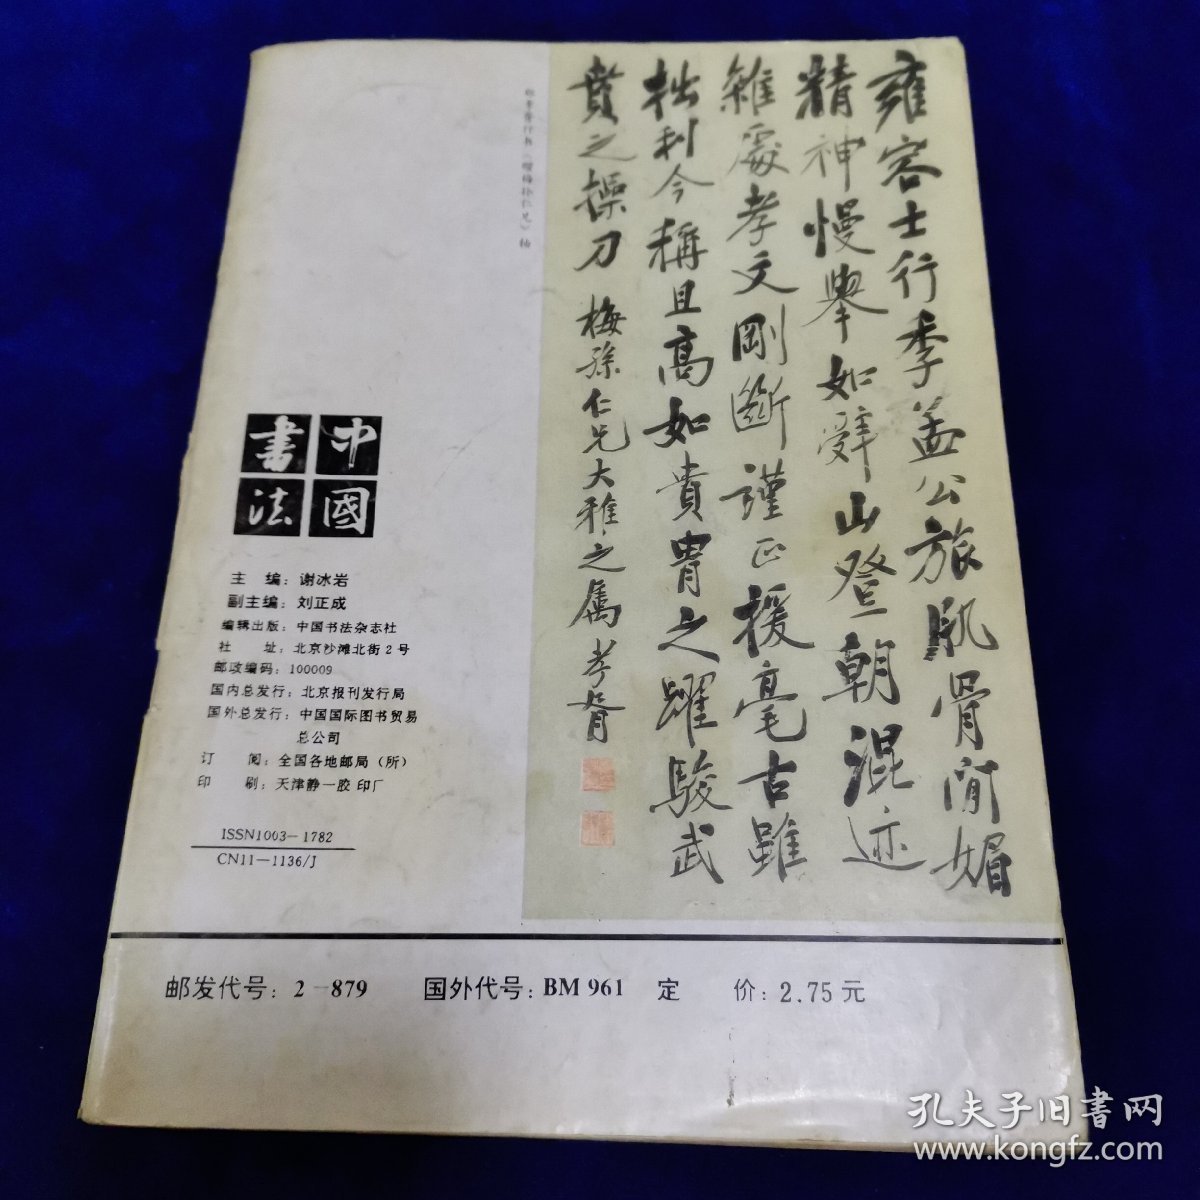 中国书法1993.2